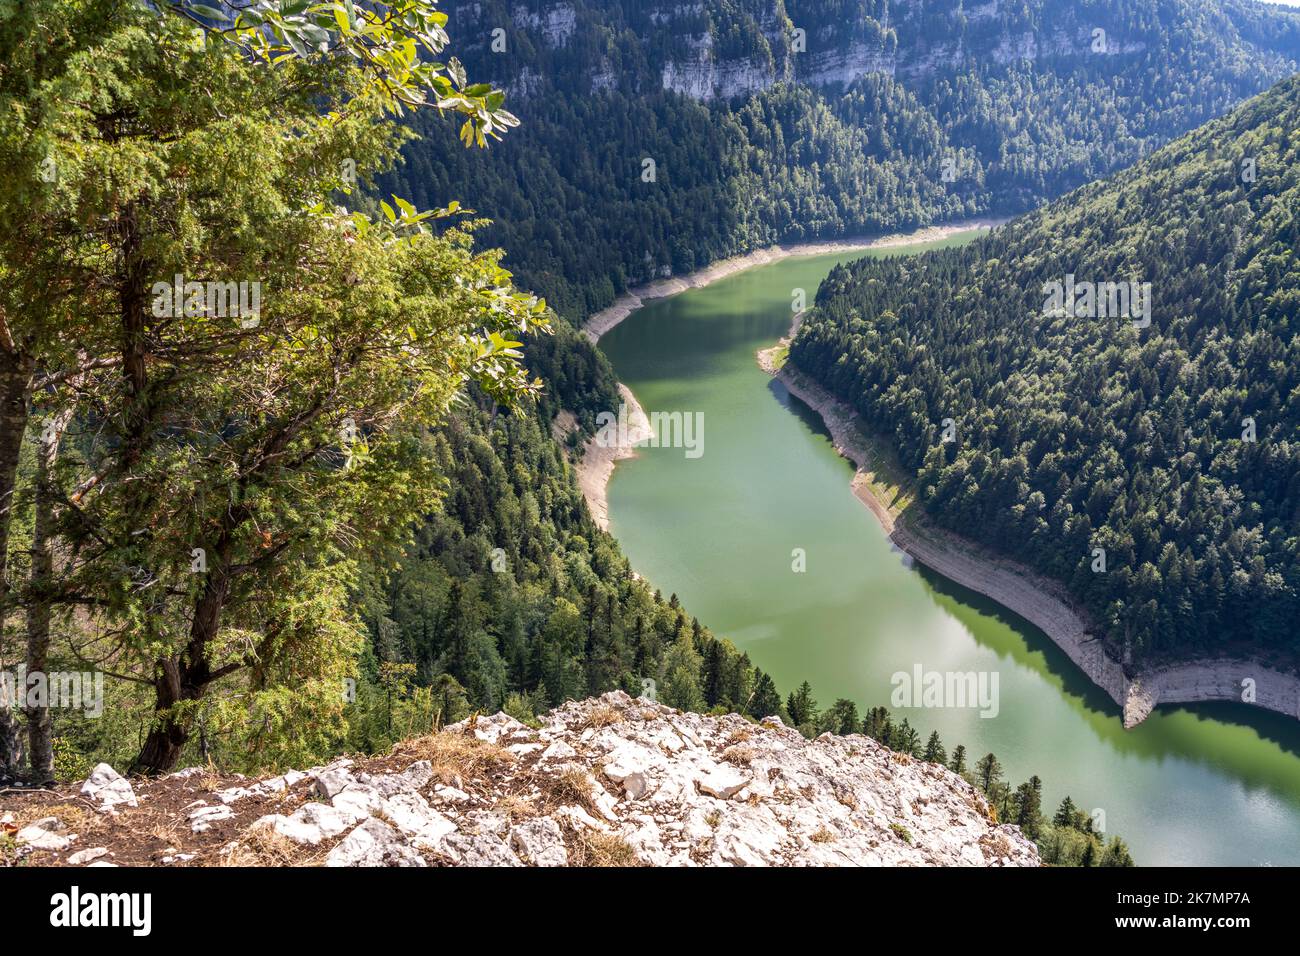 Der Doubs Stausee Lac des Moron zwischen der Schweiz und Frankreich, Europa | Lac des Moron Doubs réservoir fluvial entre la Suisse et la France, EUR Banque D'Images